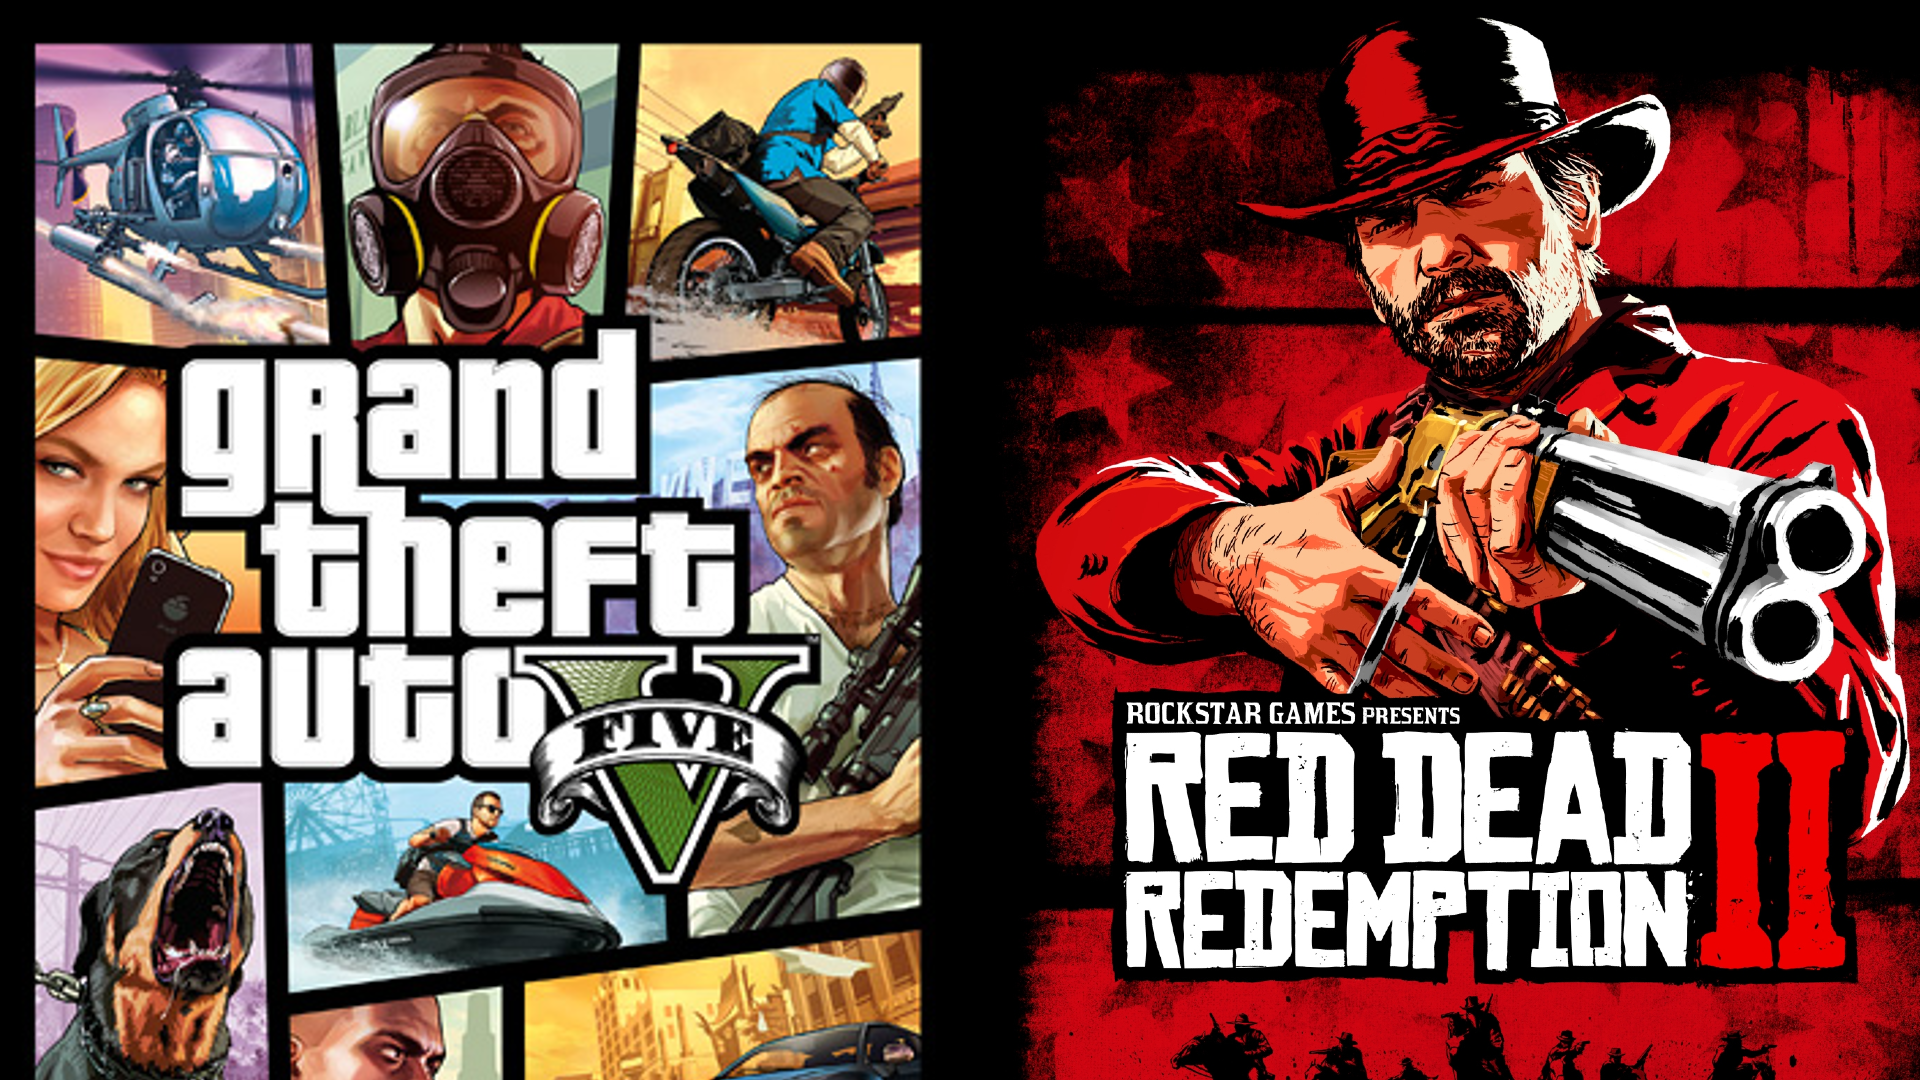 GTA V sprzedało się w 165 milionach egzemplarzy, Red Dead Redemption 2 osiągnęło 44 miliony egzemplarzy.